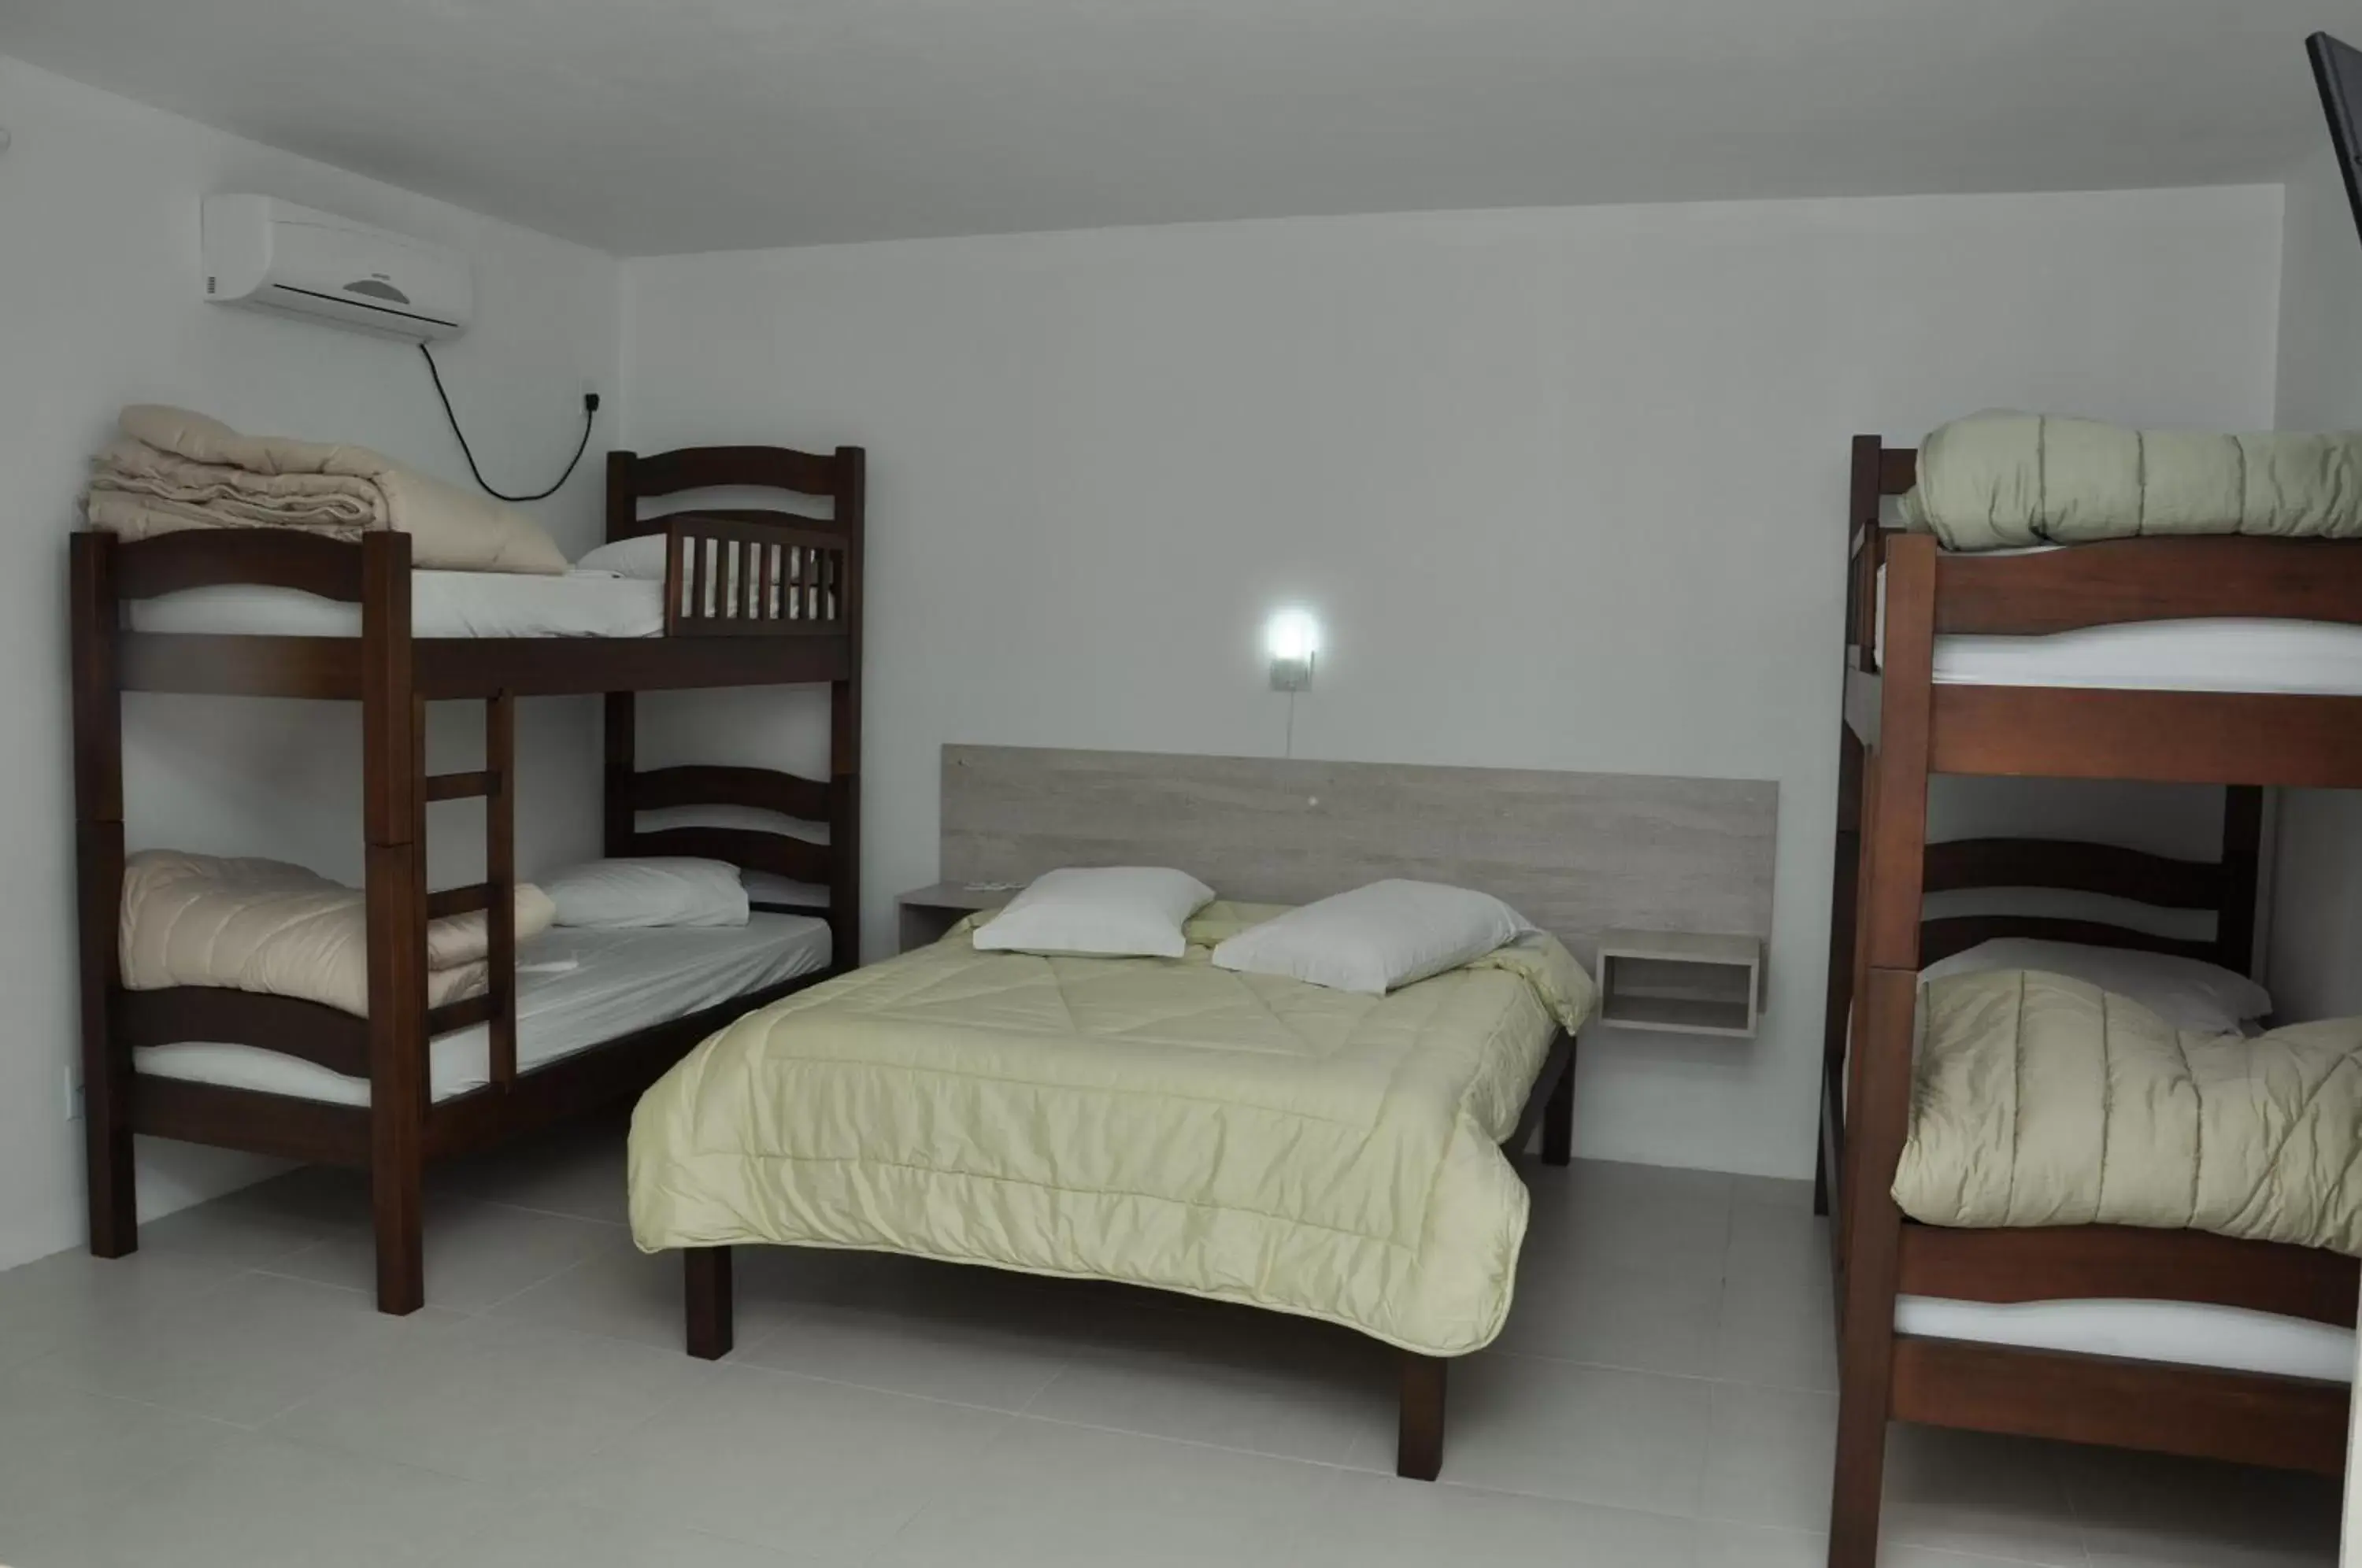 Bedroom, Bunk Bed in Marechal Plaza Hotel